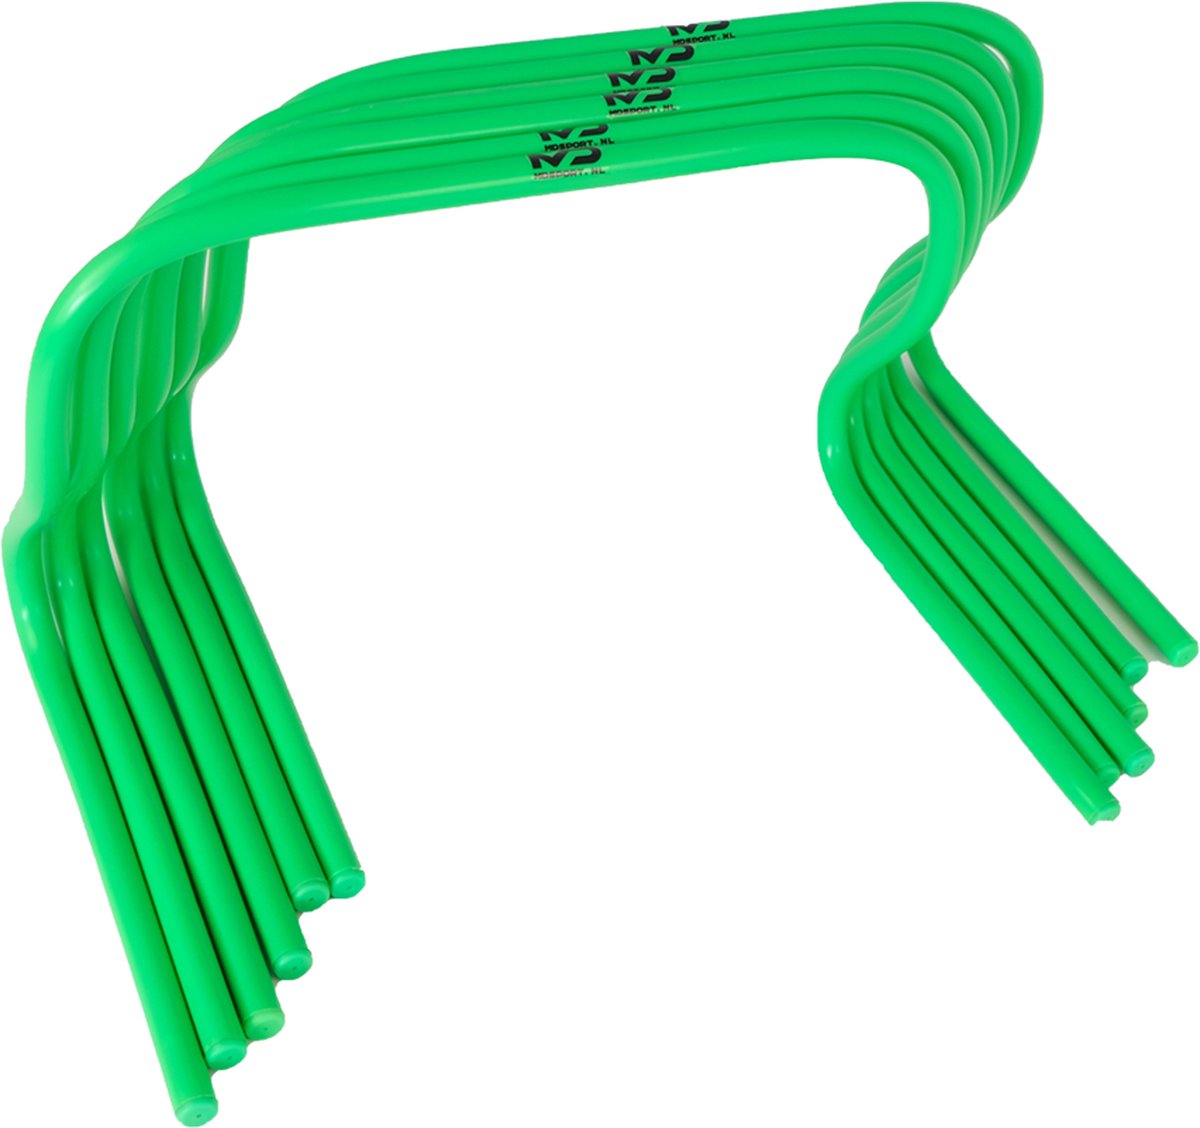 MDsport- Snelheidshordes - 30 cm - Set van 6 - Groen